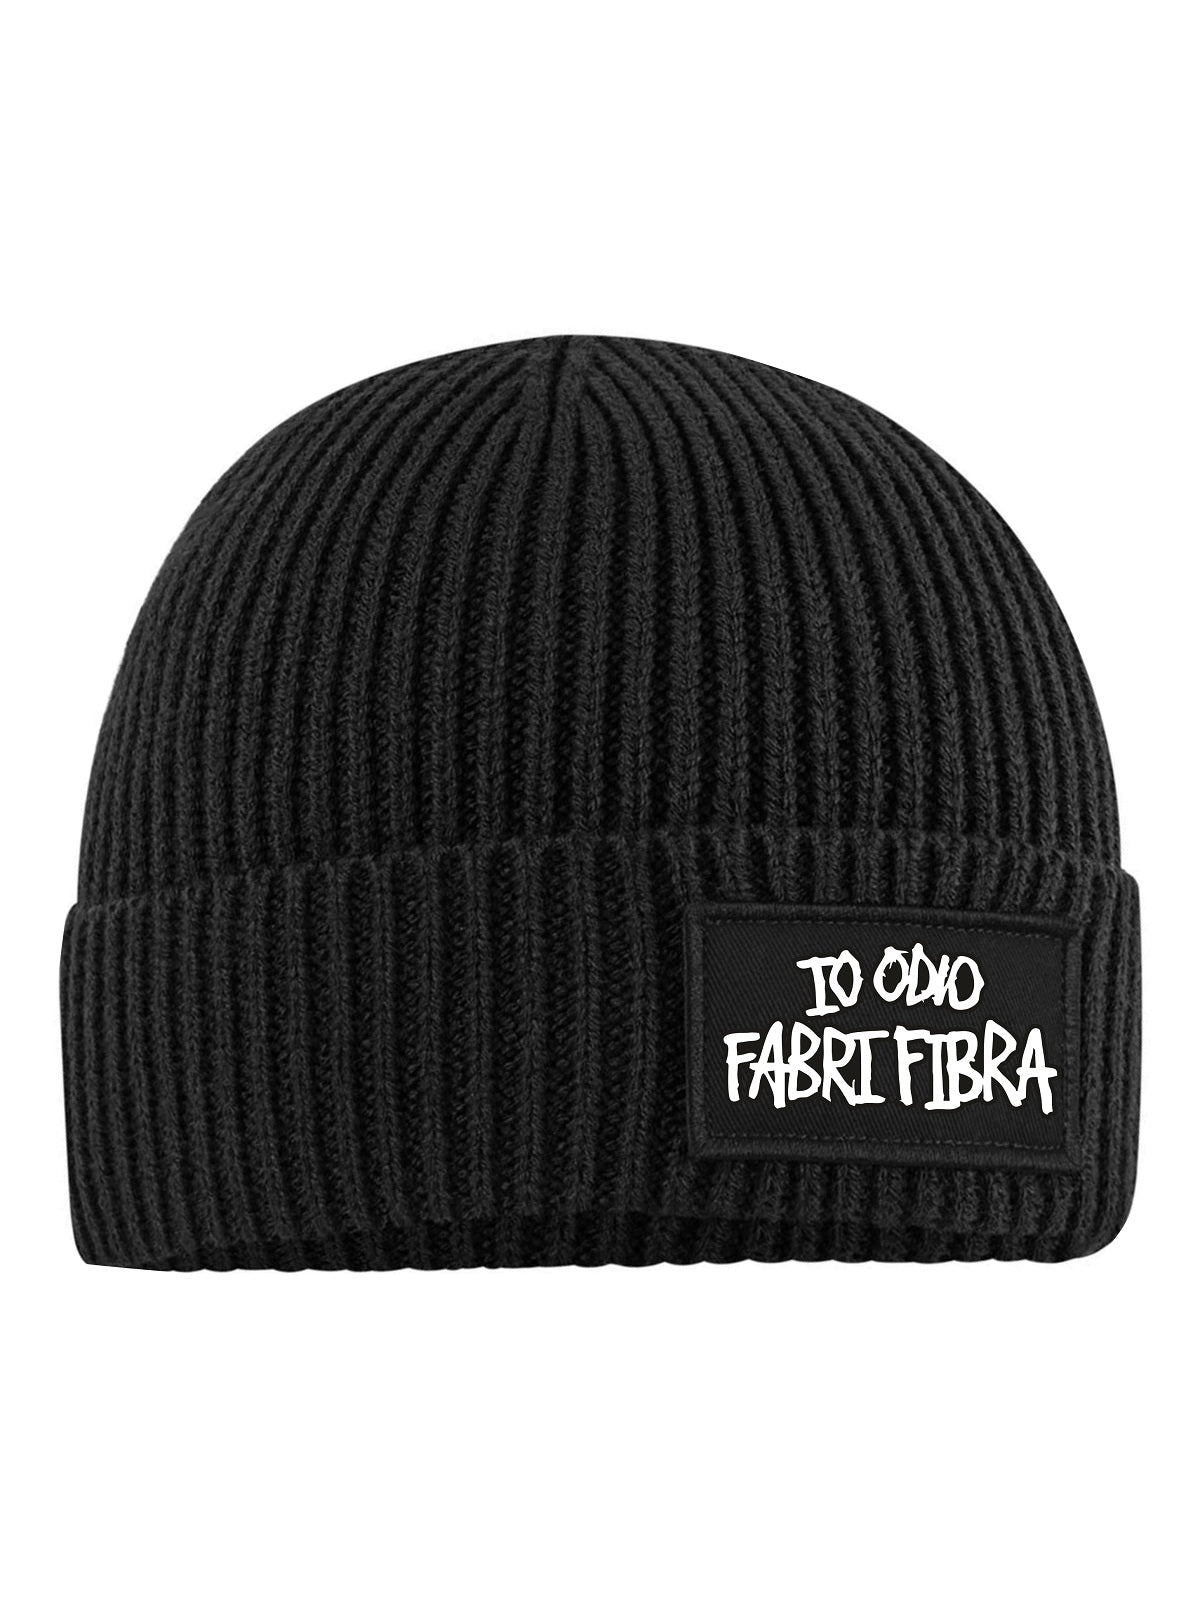 Cappellino invernale in maglia con stampa io odio fabri fibra